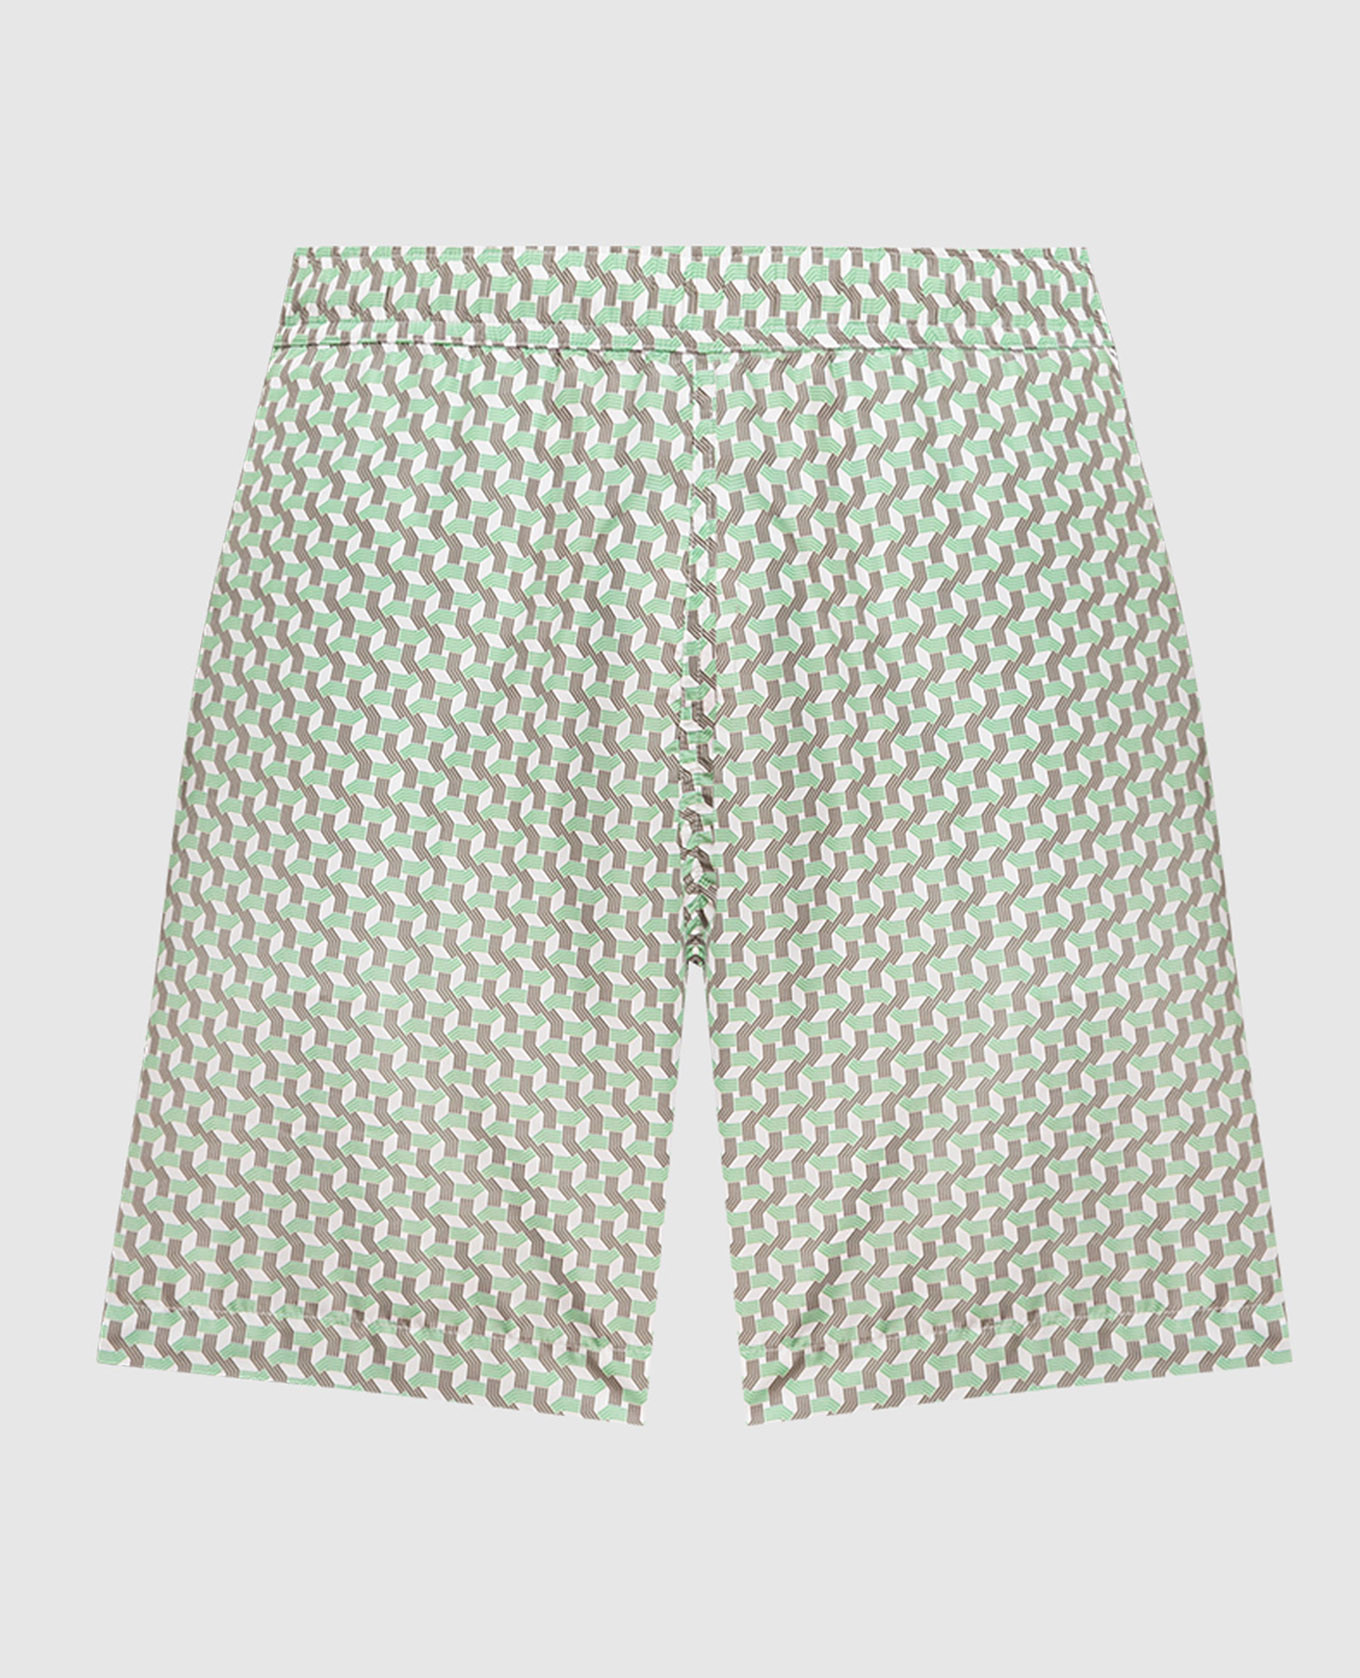 Зеленые шорты для плавания в геометрическом принте.